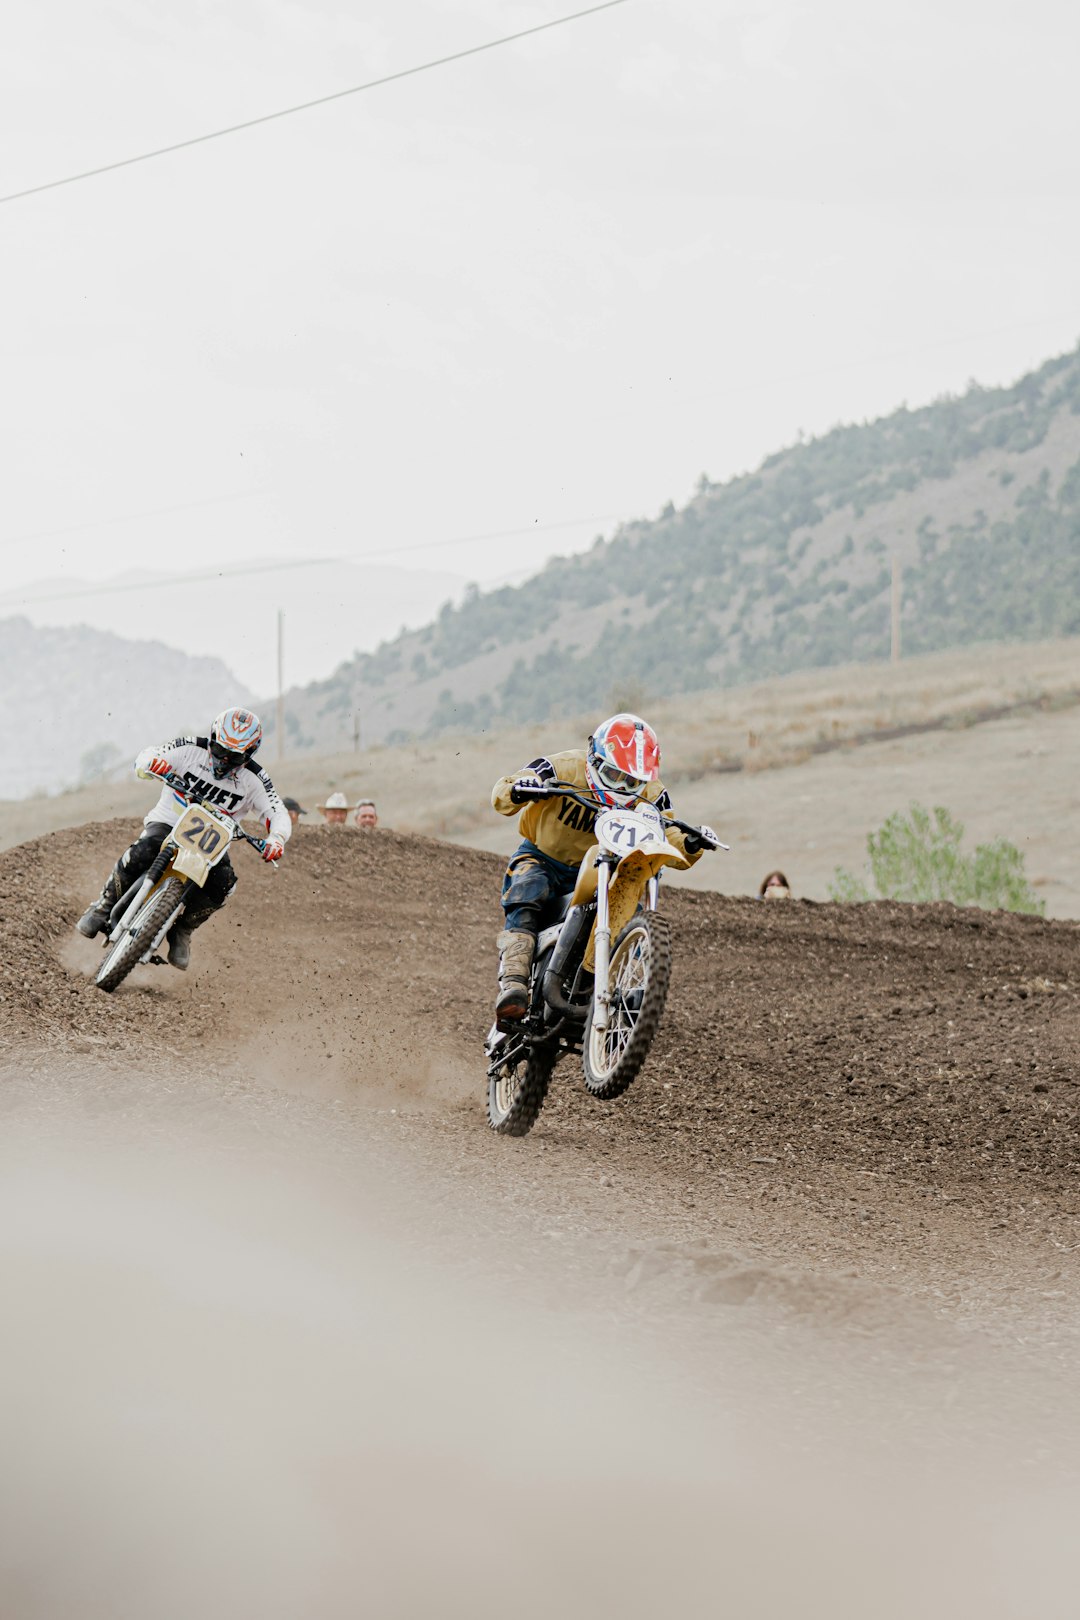 2 men riding motocross dirt bikes on dirt road during daytime